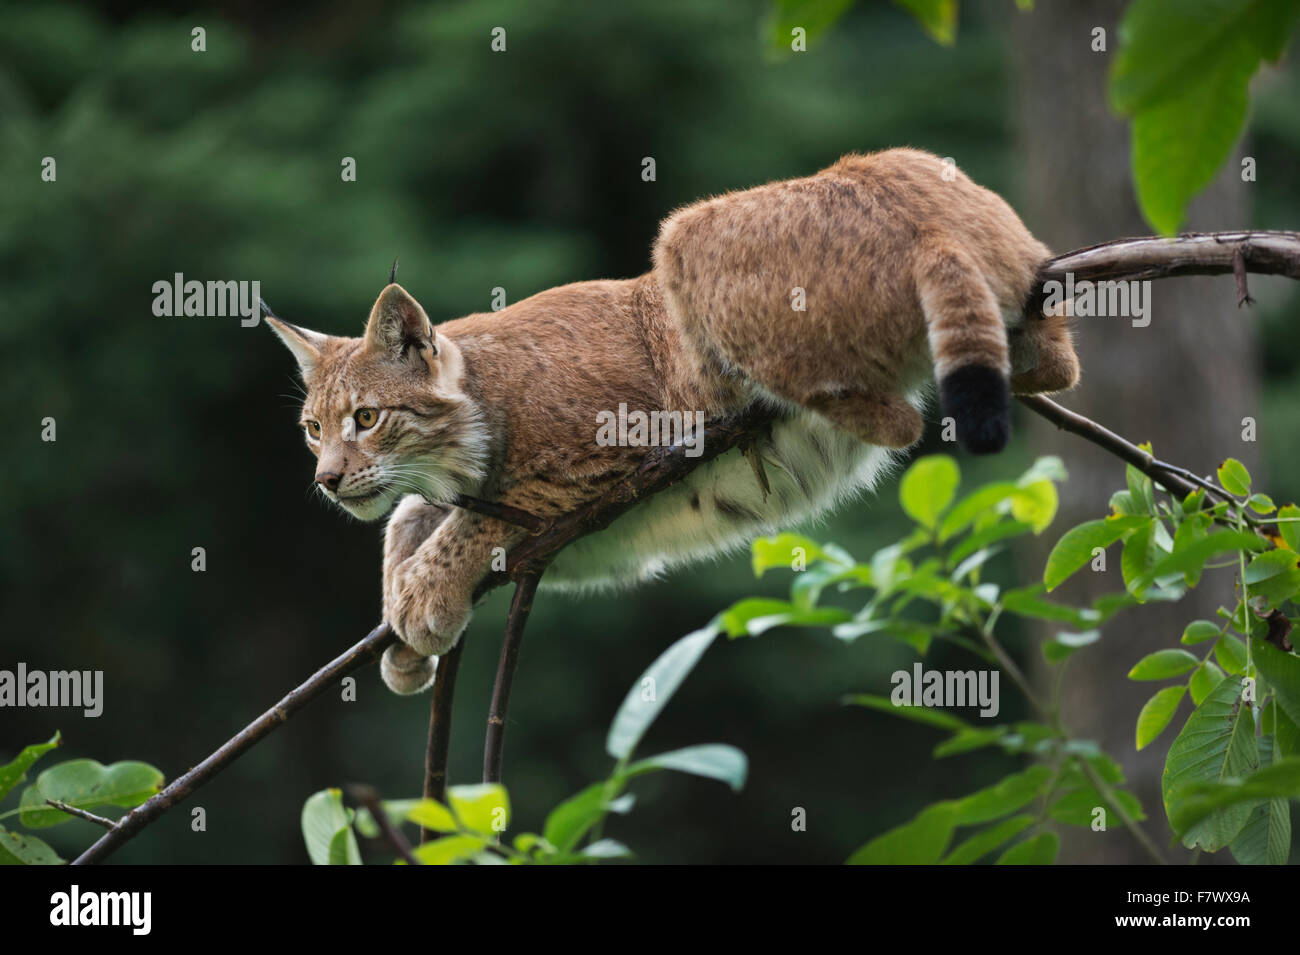 Adultos / lince euroasiático Eurasischer Luchs ( Lynx lynx ) descansa sobre una bonita rama delgada, mira alerta. Foto de stock